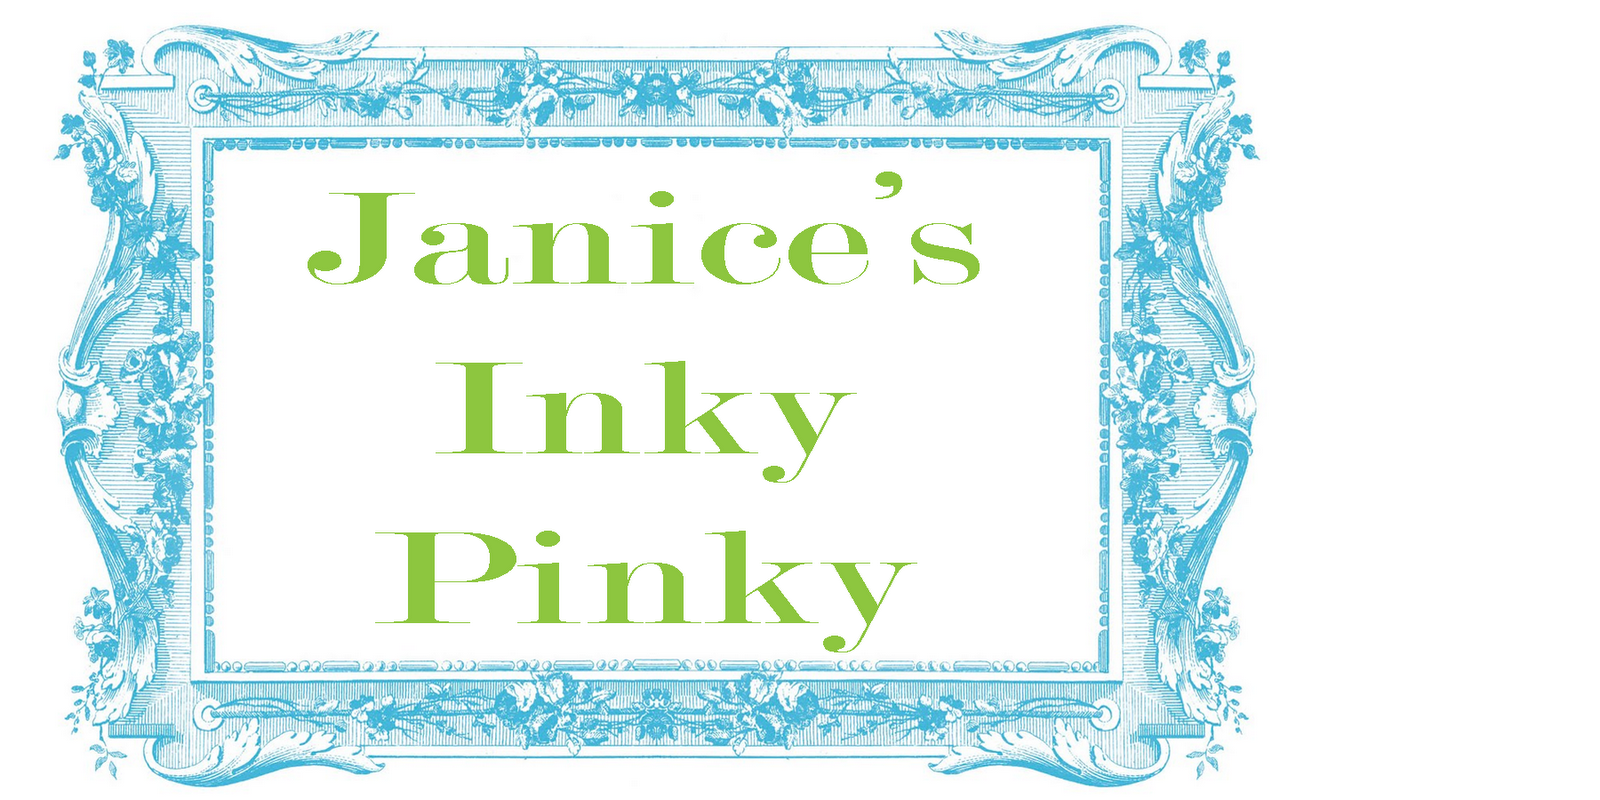 Janice's Inky Pinky